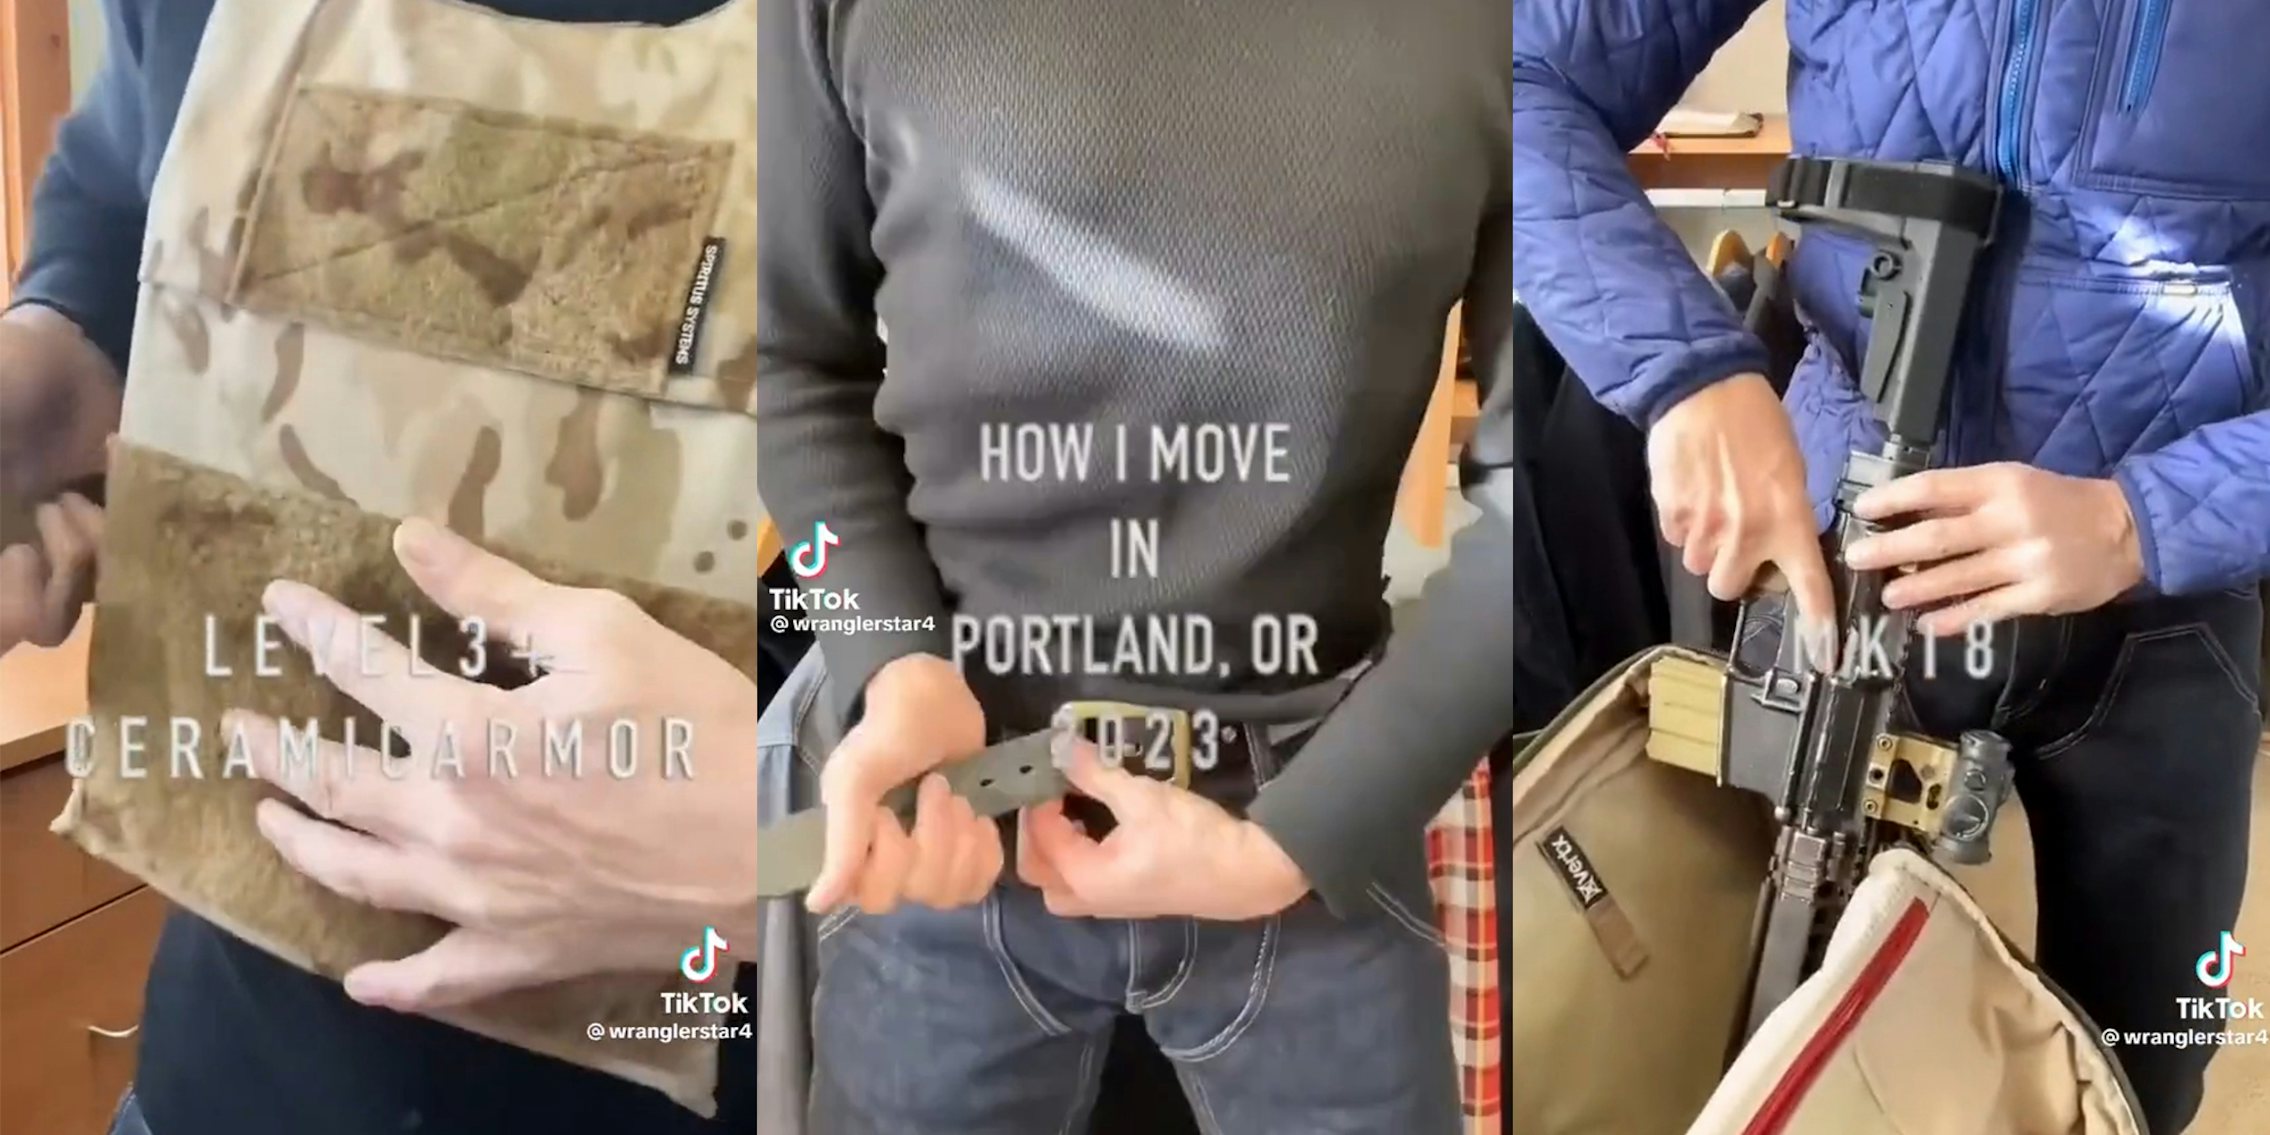 TikToker puts Body armor in Portland